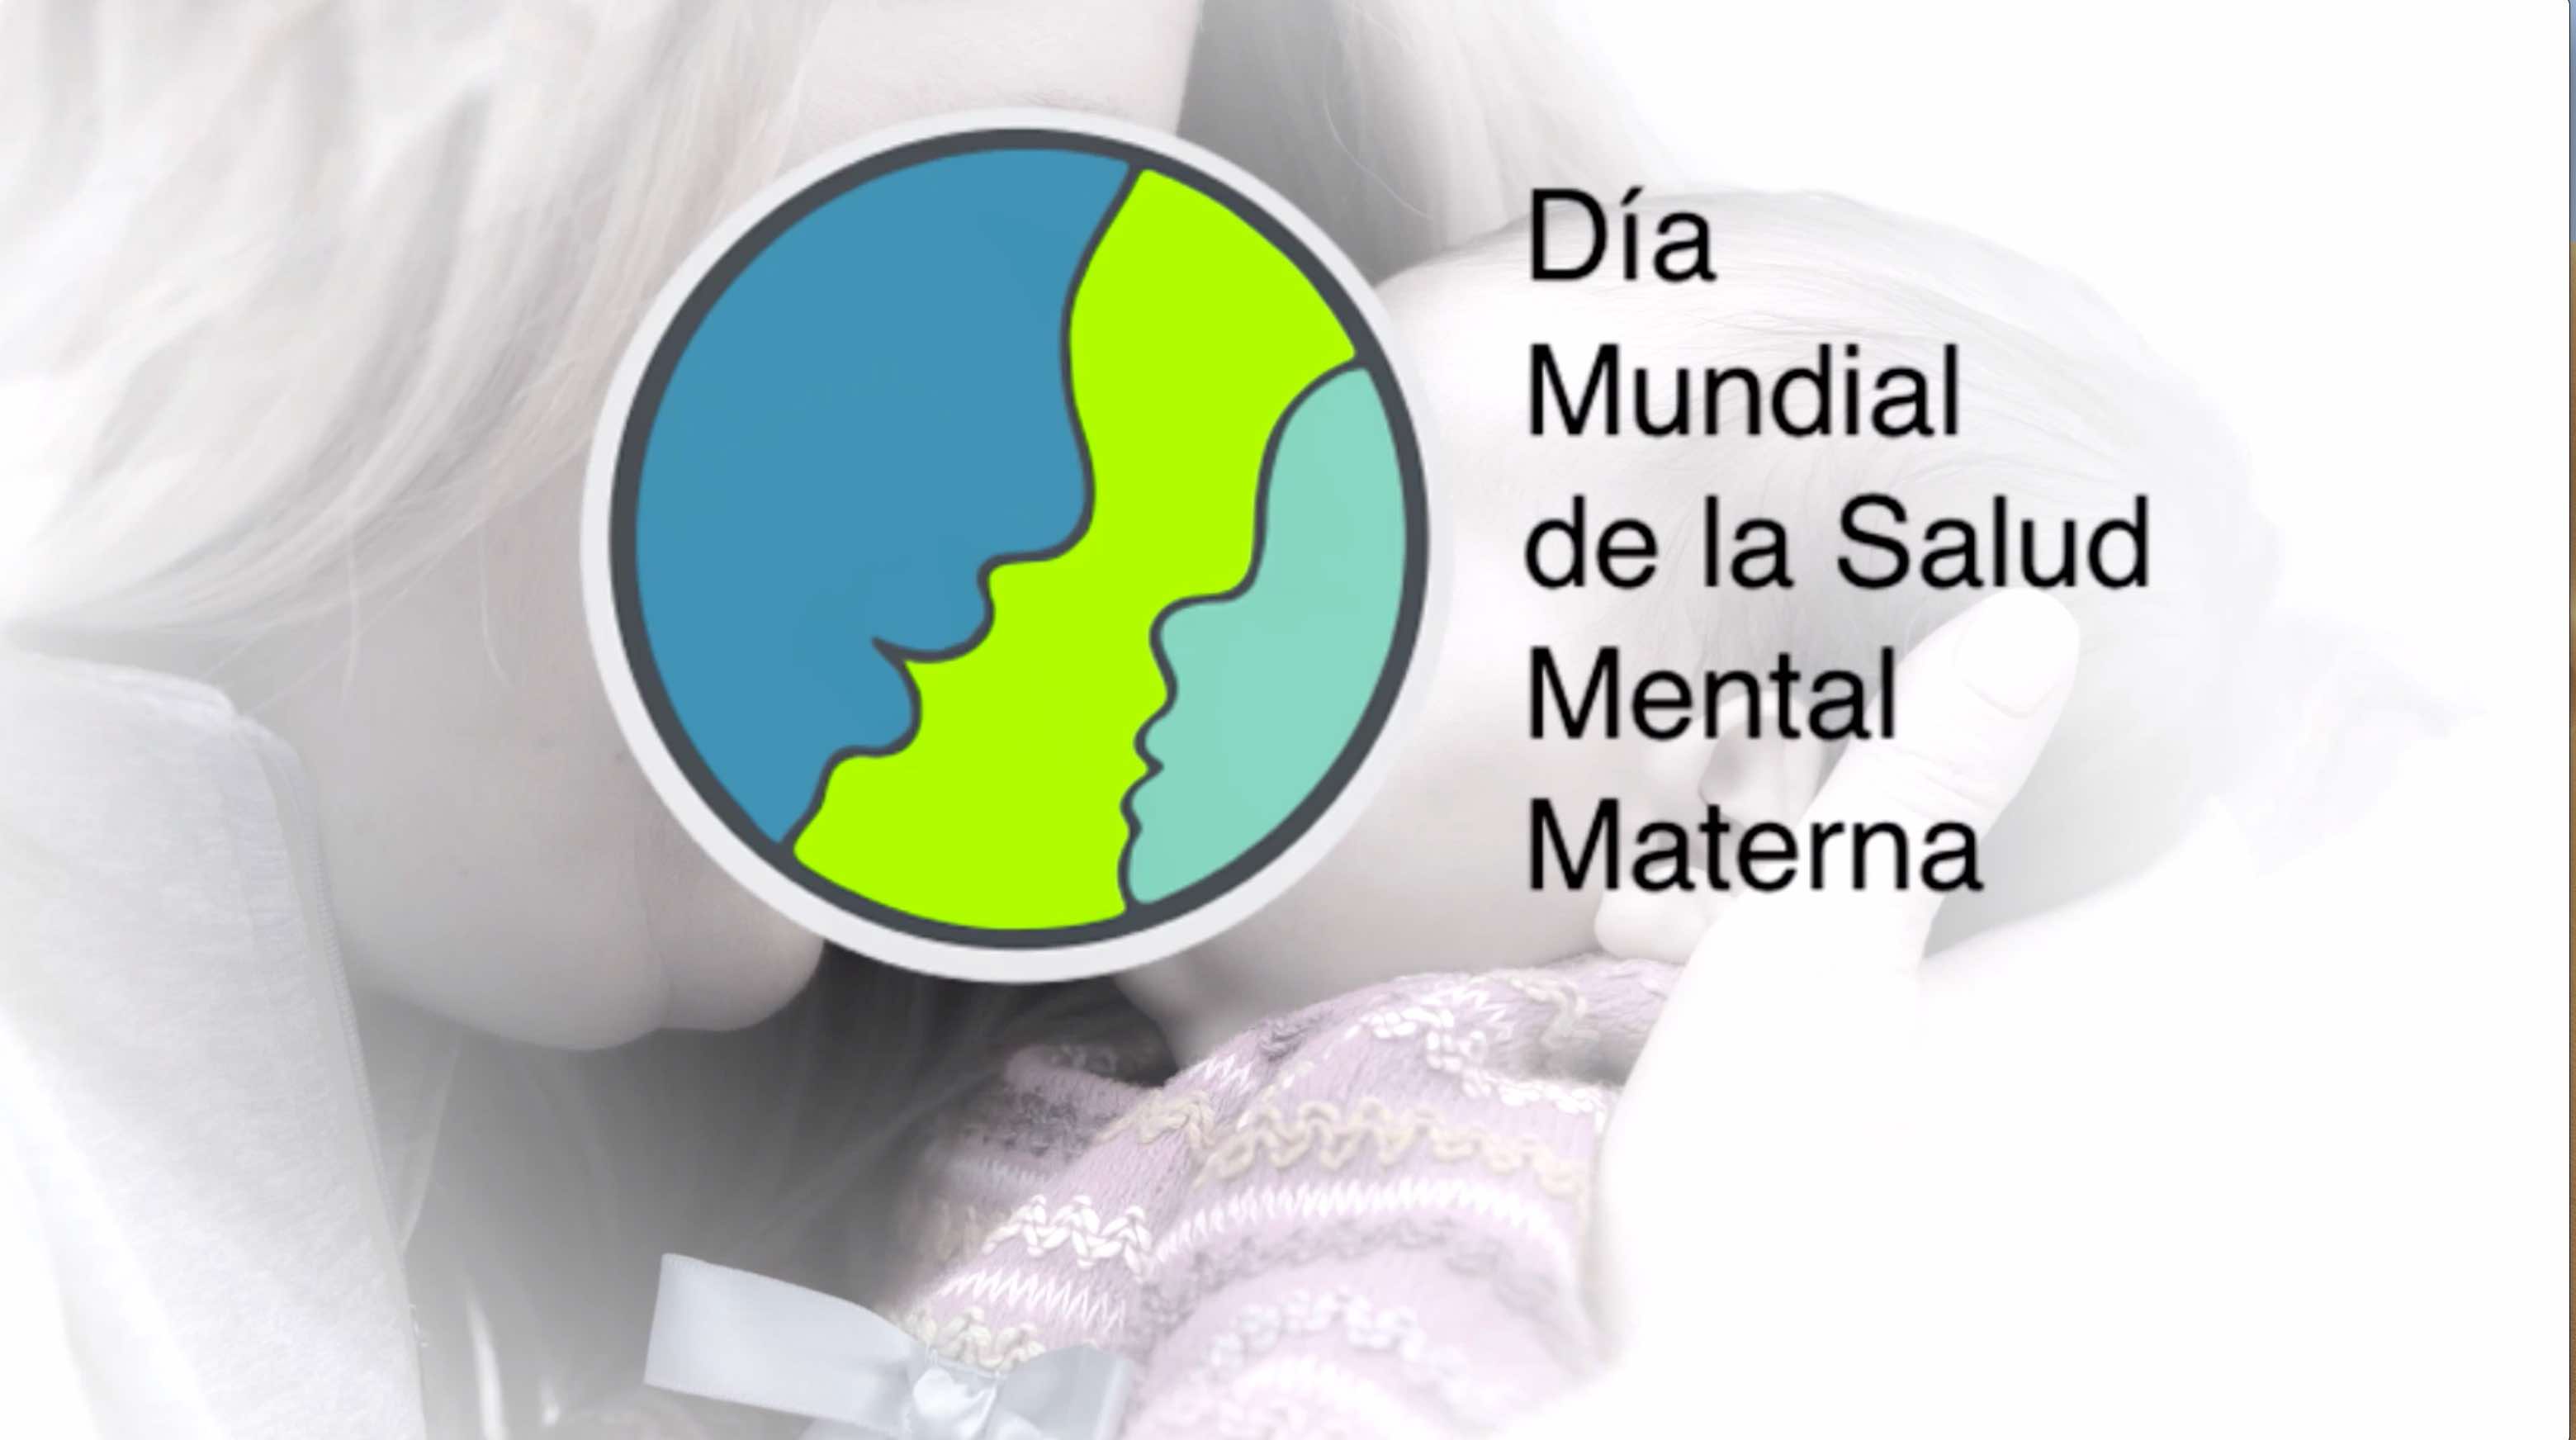 Vídeo para difundir la Campaña del Día Mundial de la Salud Mental Materna